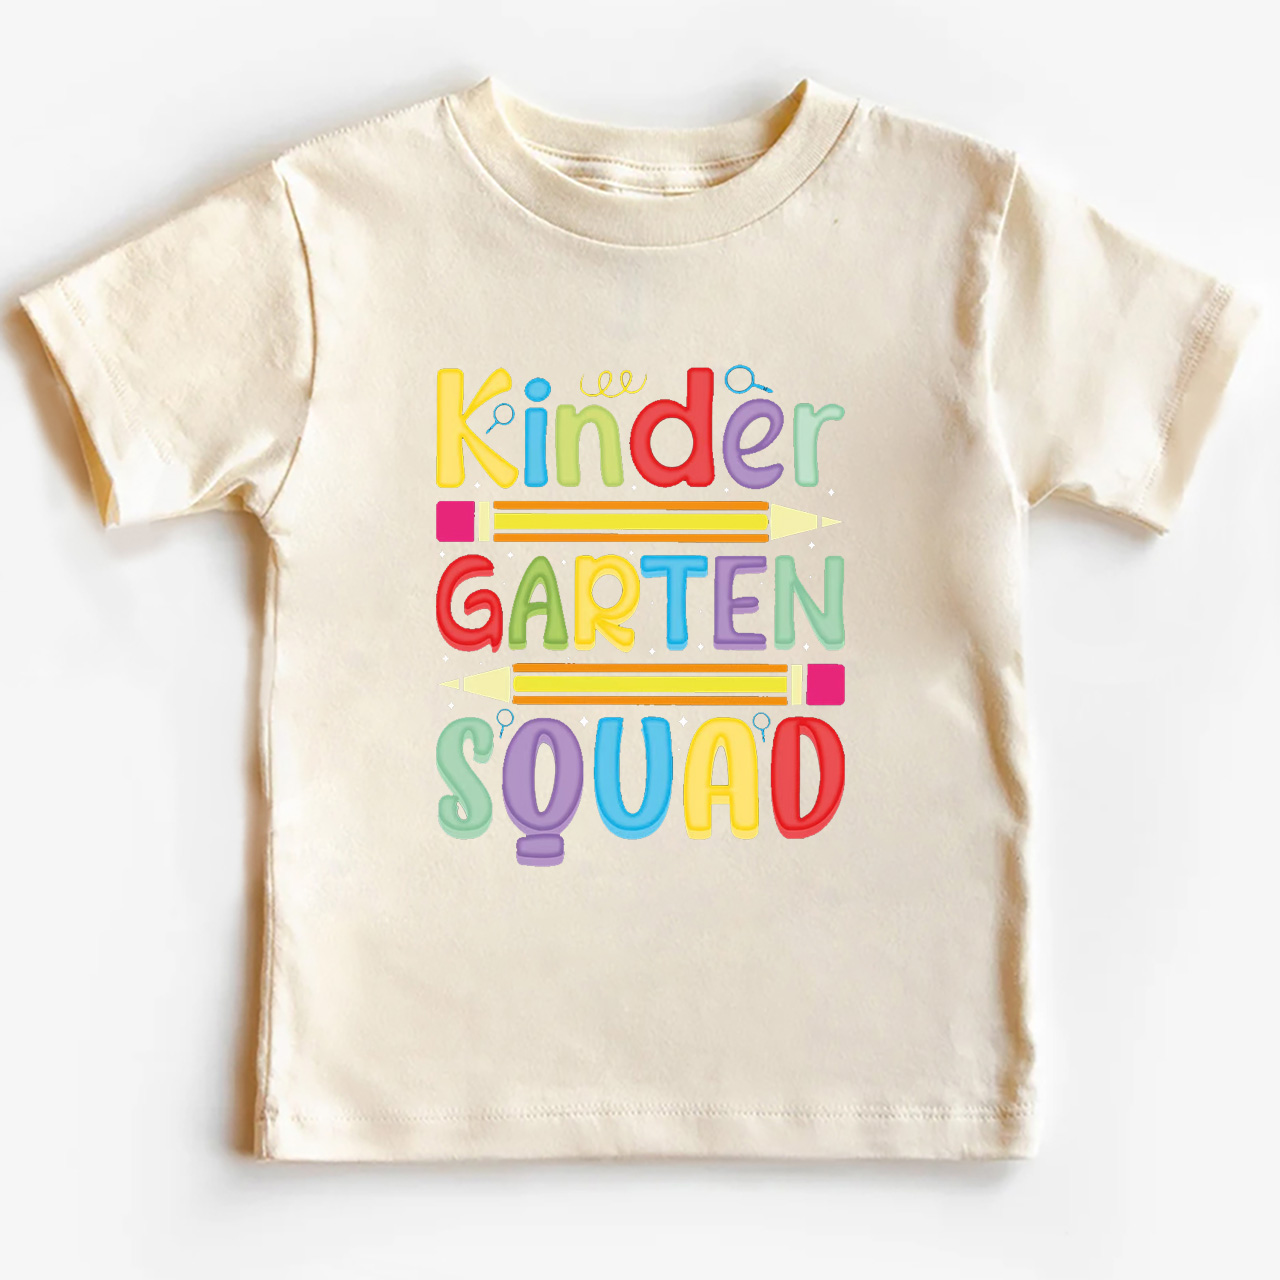 Kindergarten Squad Shirts For Kids